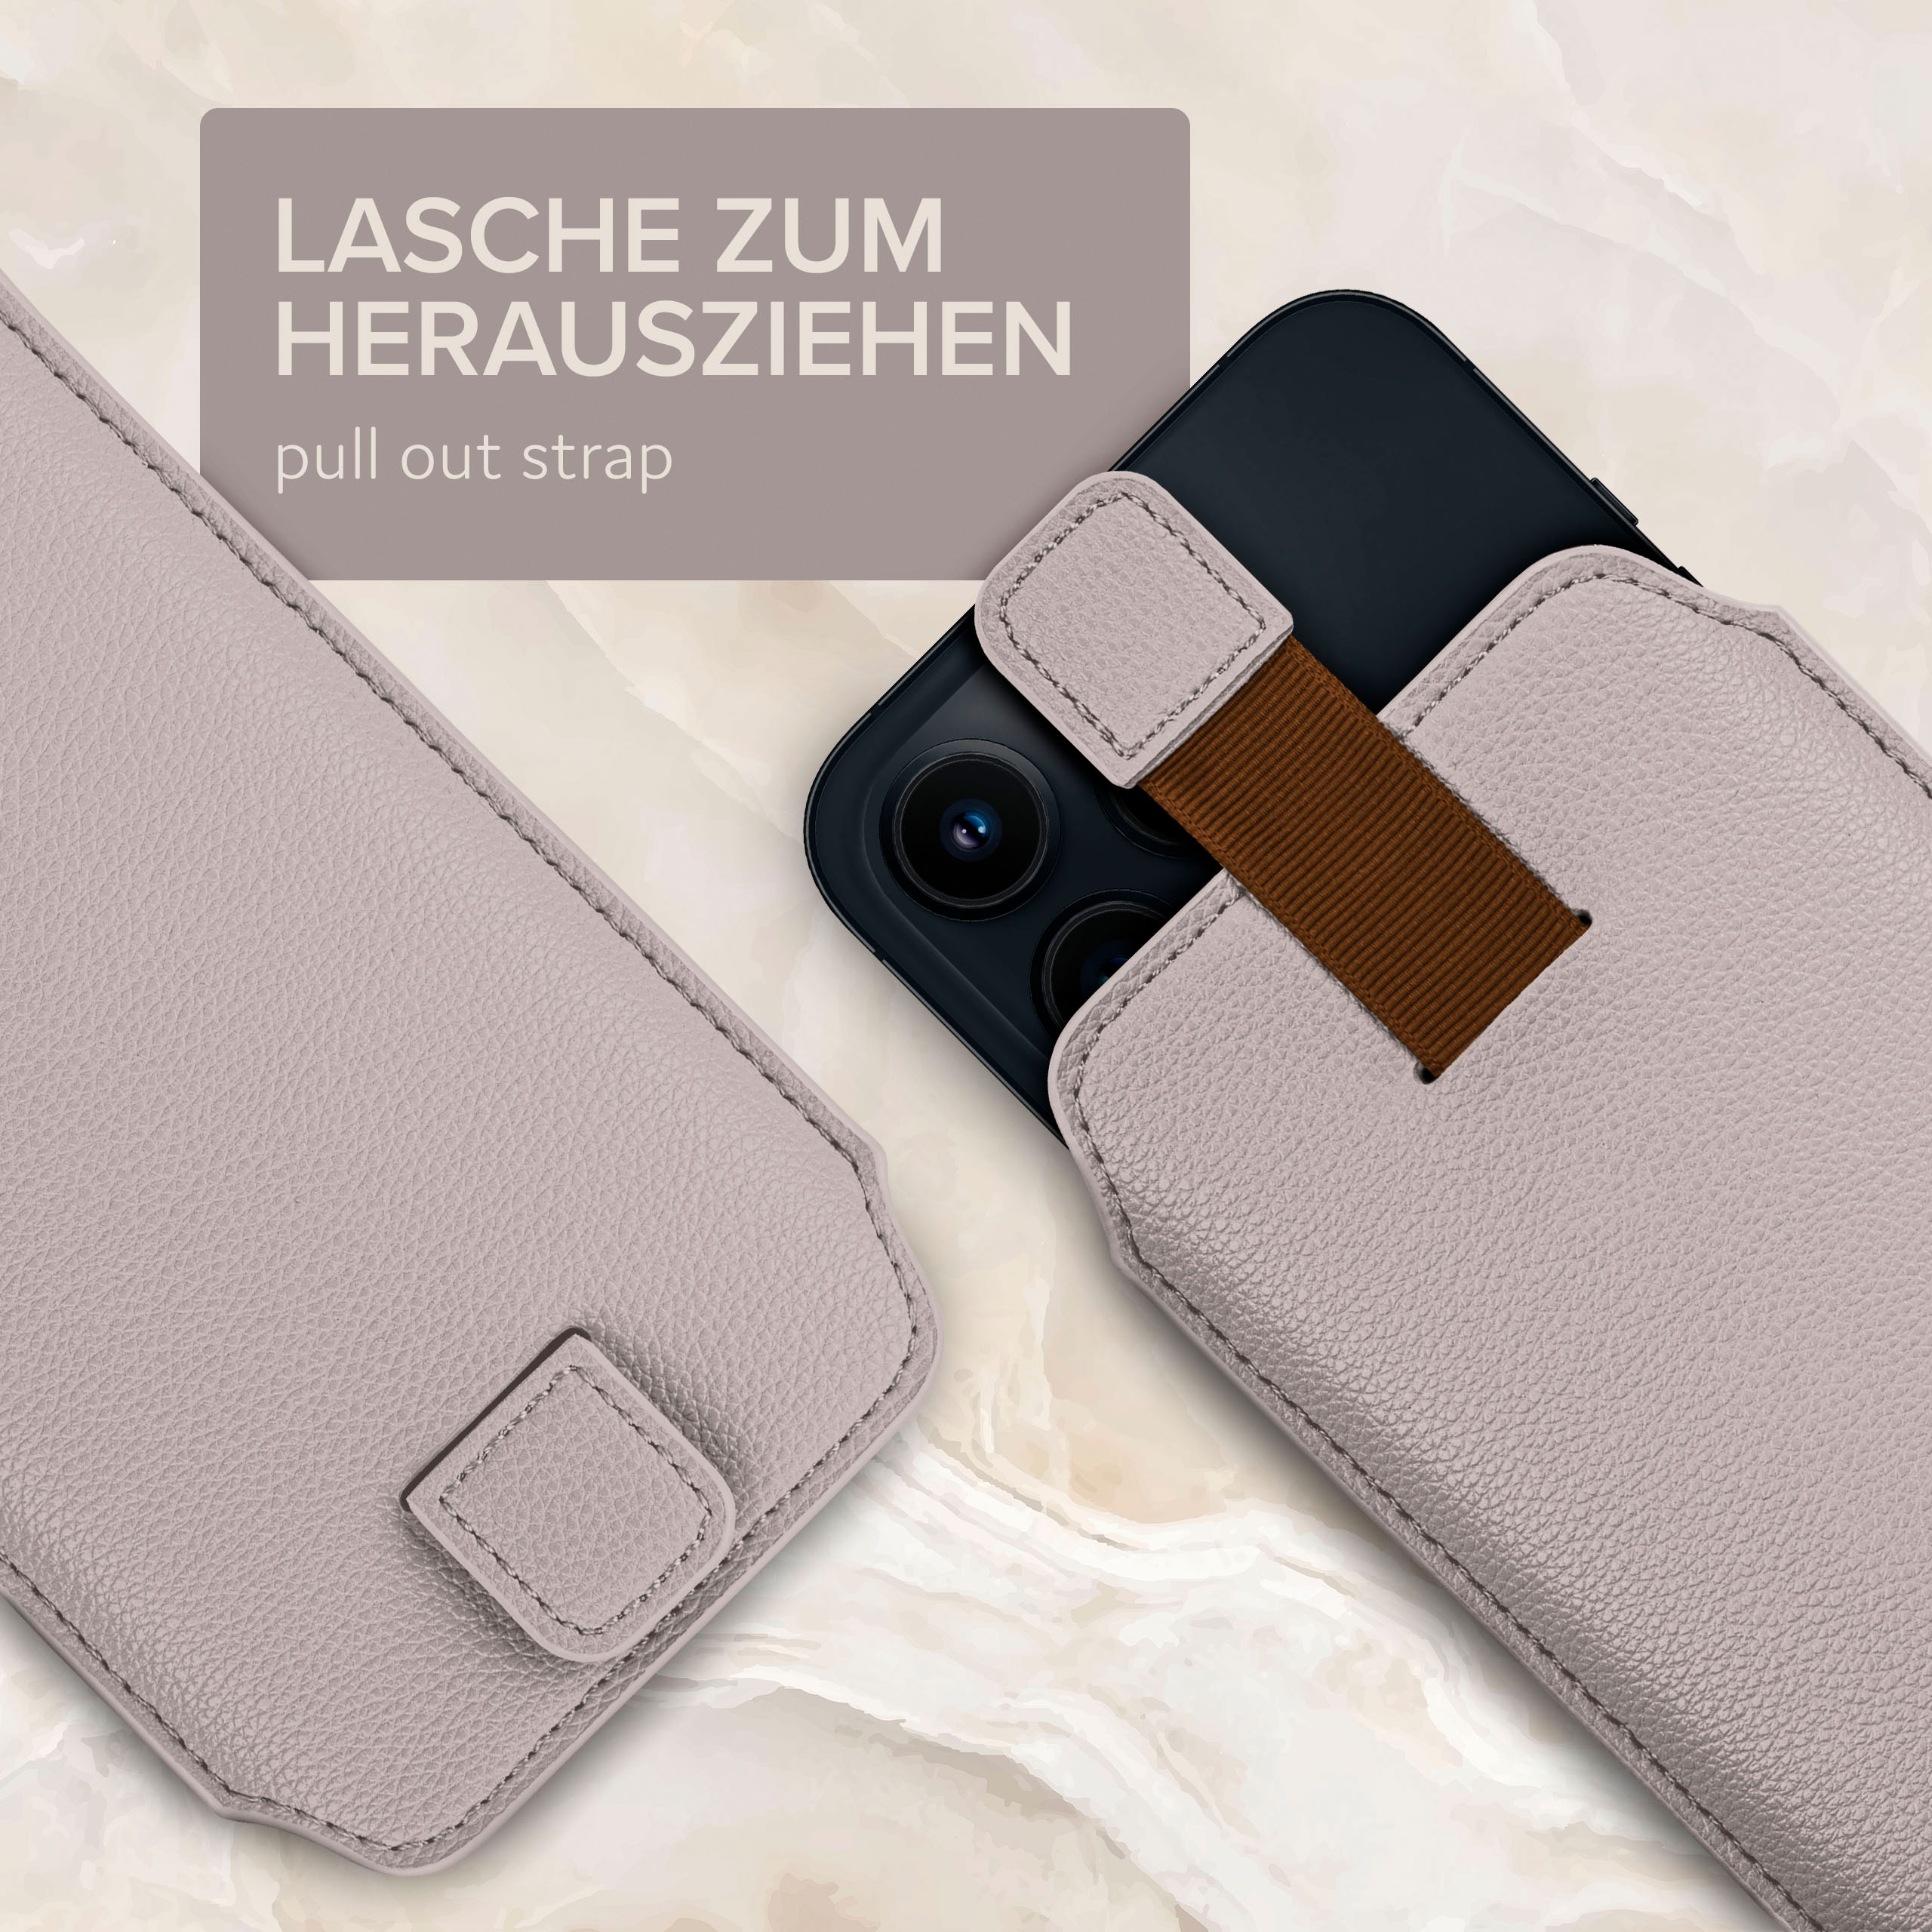 mit Einsteckhülle Cover, A5 Hellgrau Galaxy Samsung, Full (2015), Zuglasche, ONEFLOW